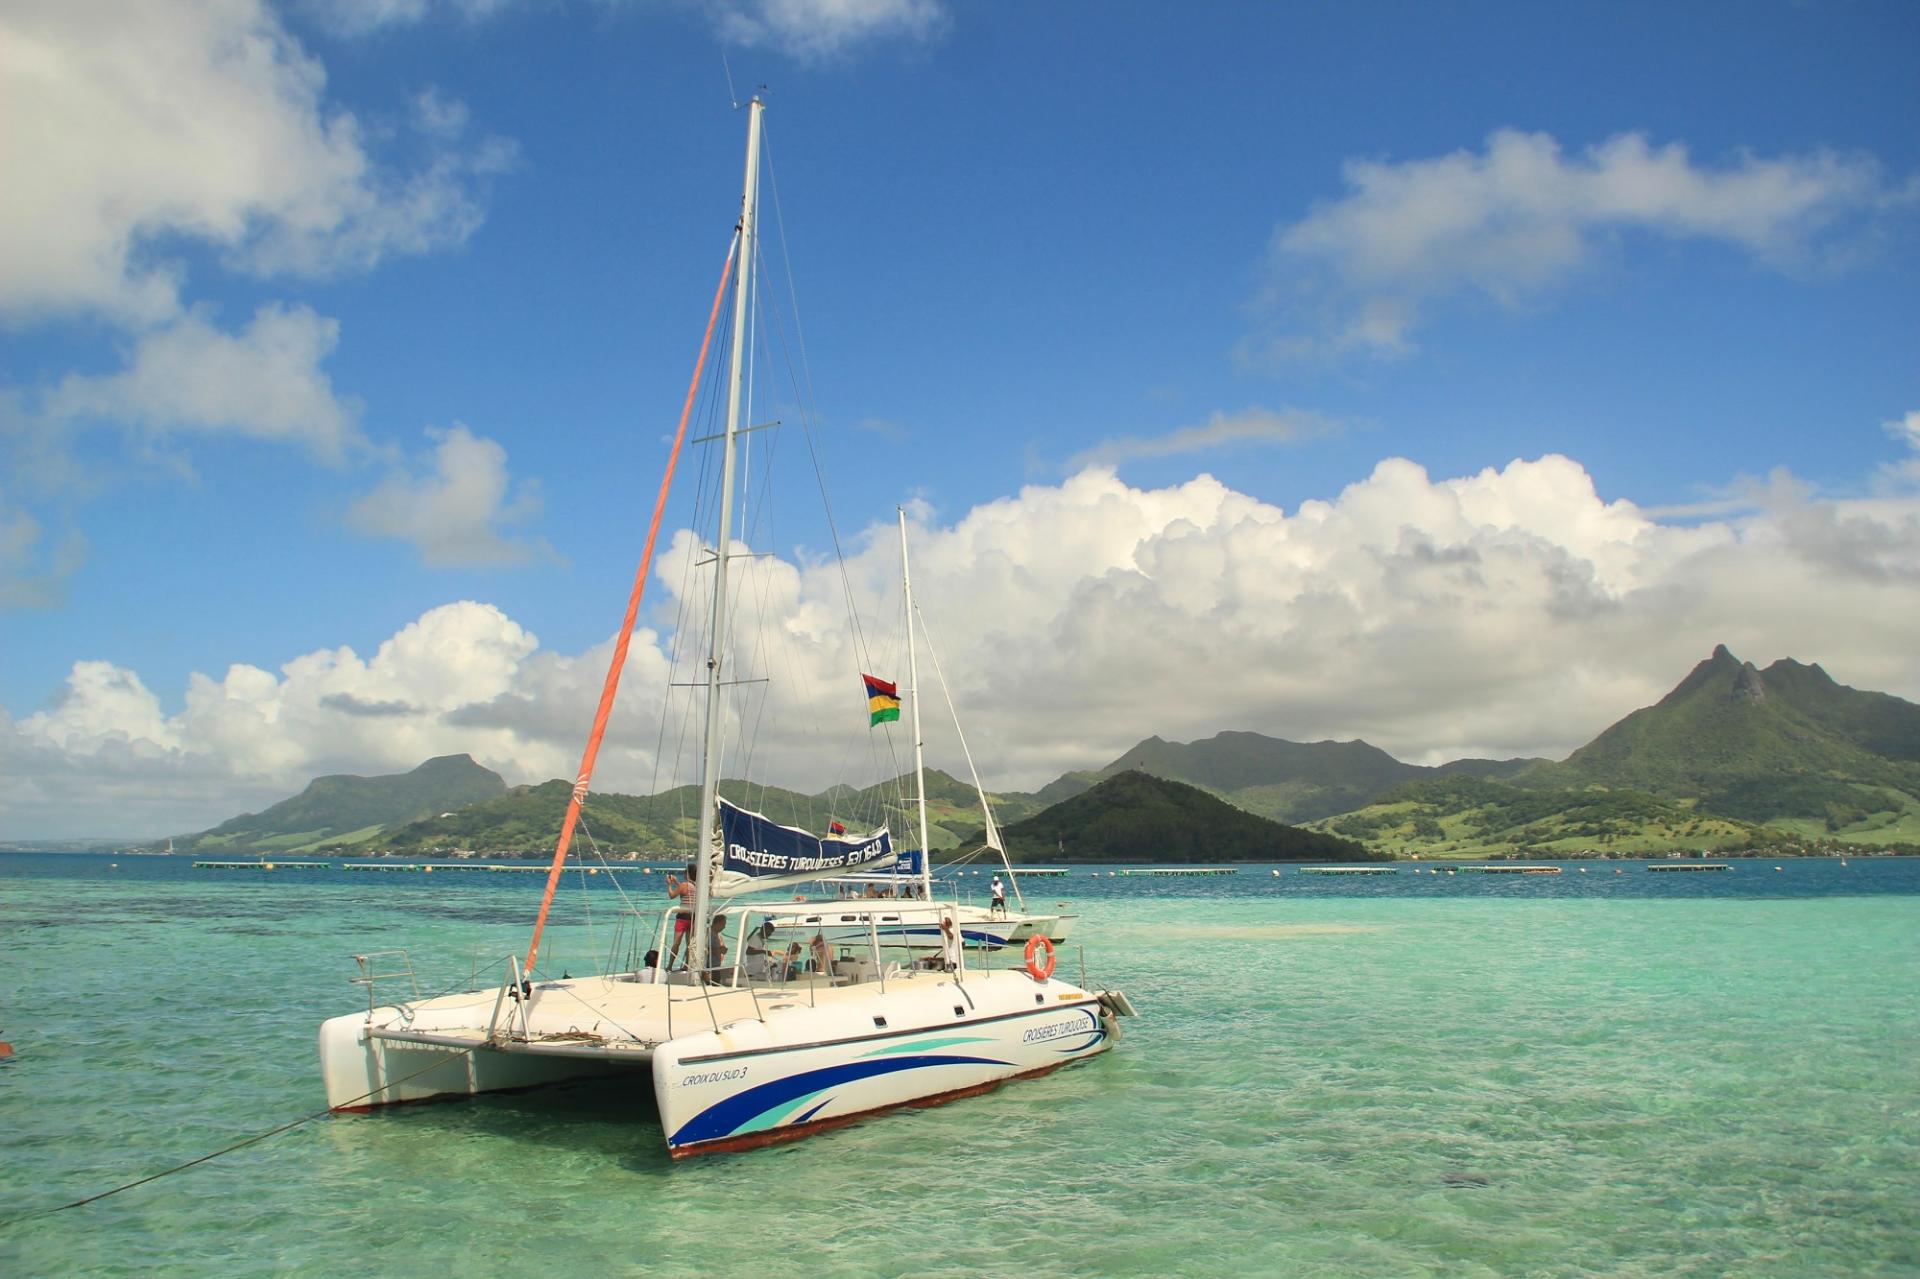 Mauritius wildcat catamarans